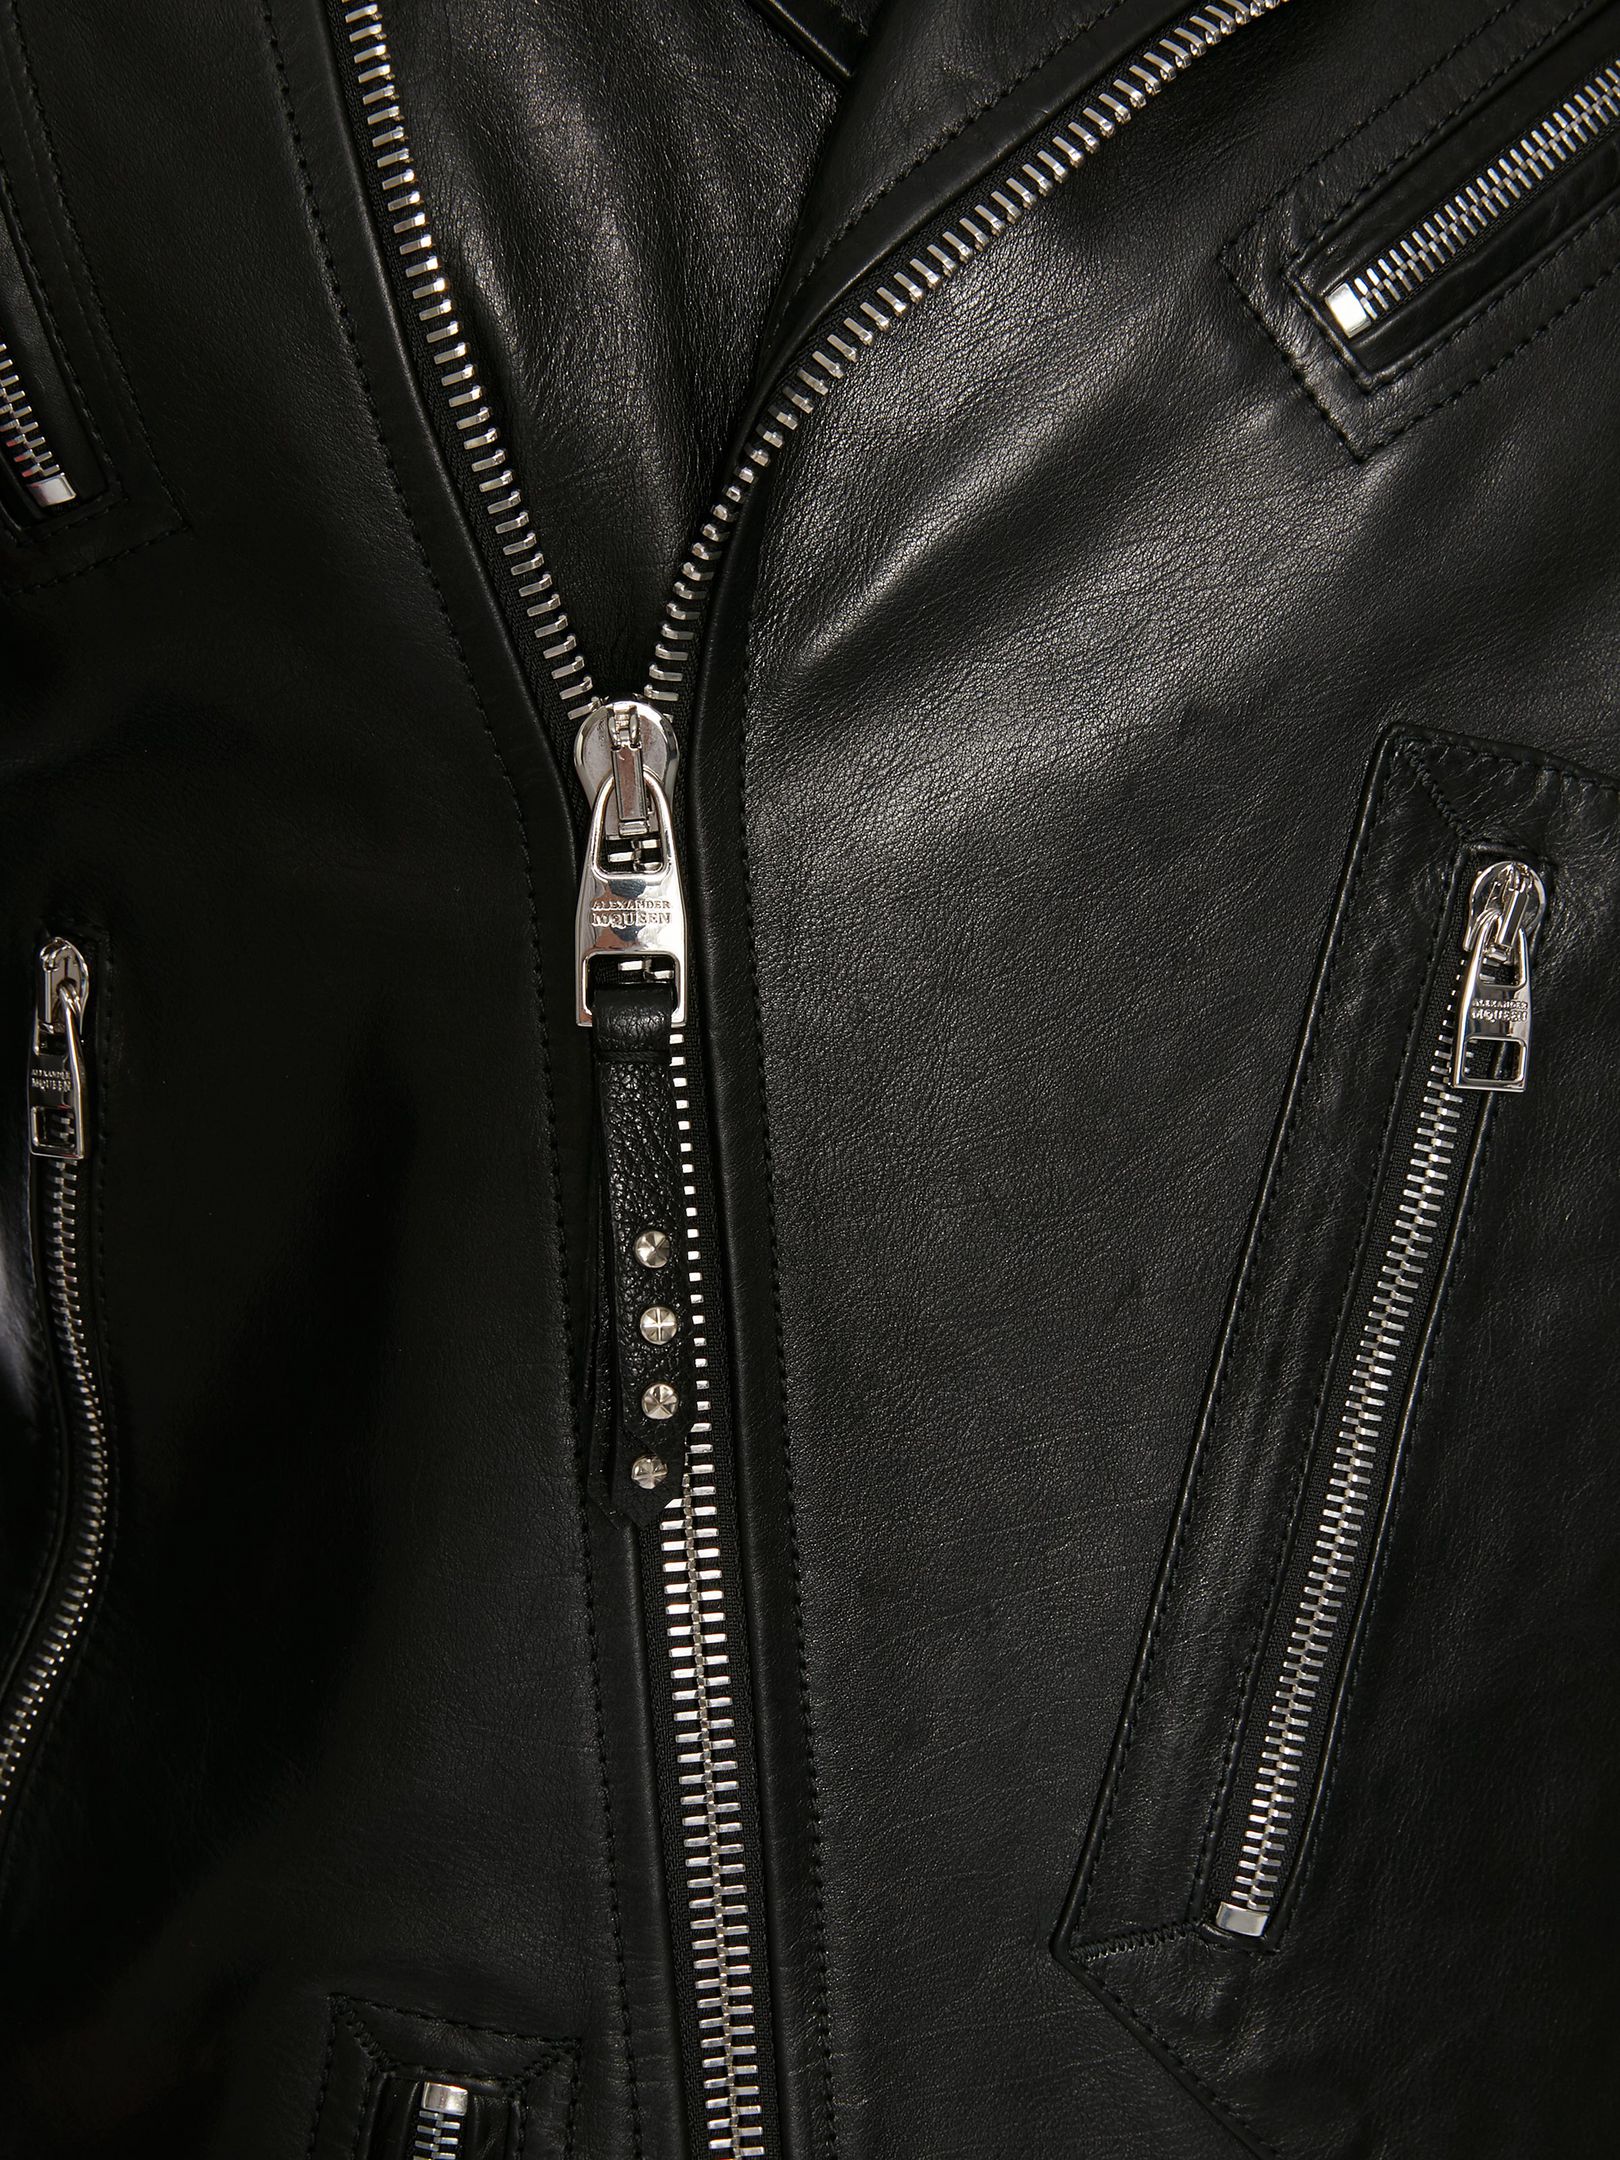 Men's Shiny Black Calfskin Leather Jacket - Maker of Jacket